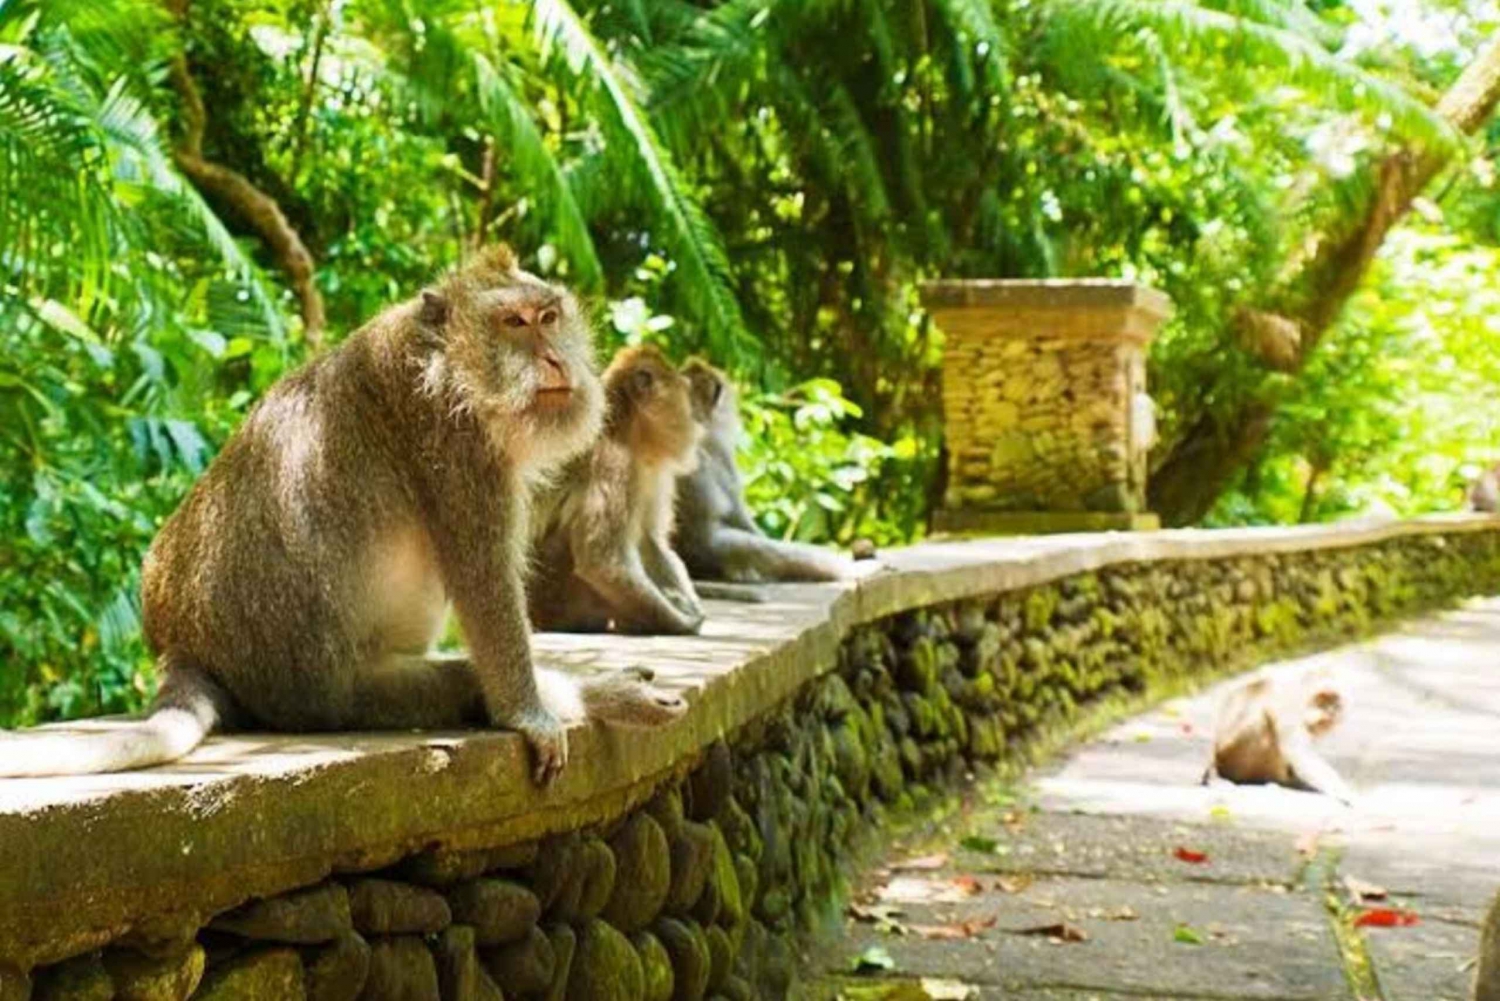 Małpi las, taras ryżowy, świątynia wodna i wycieczka do wodospadu